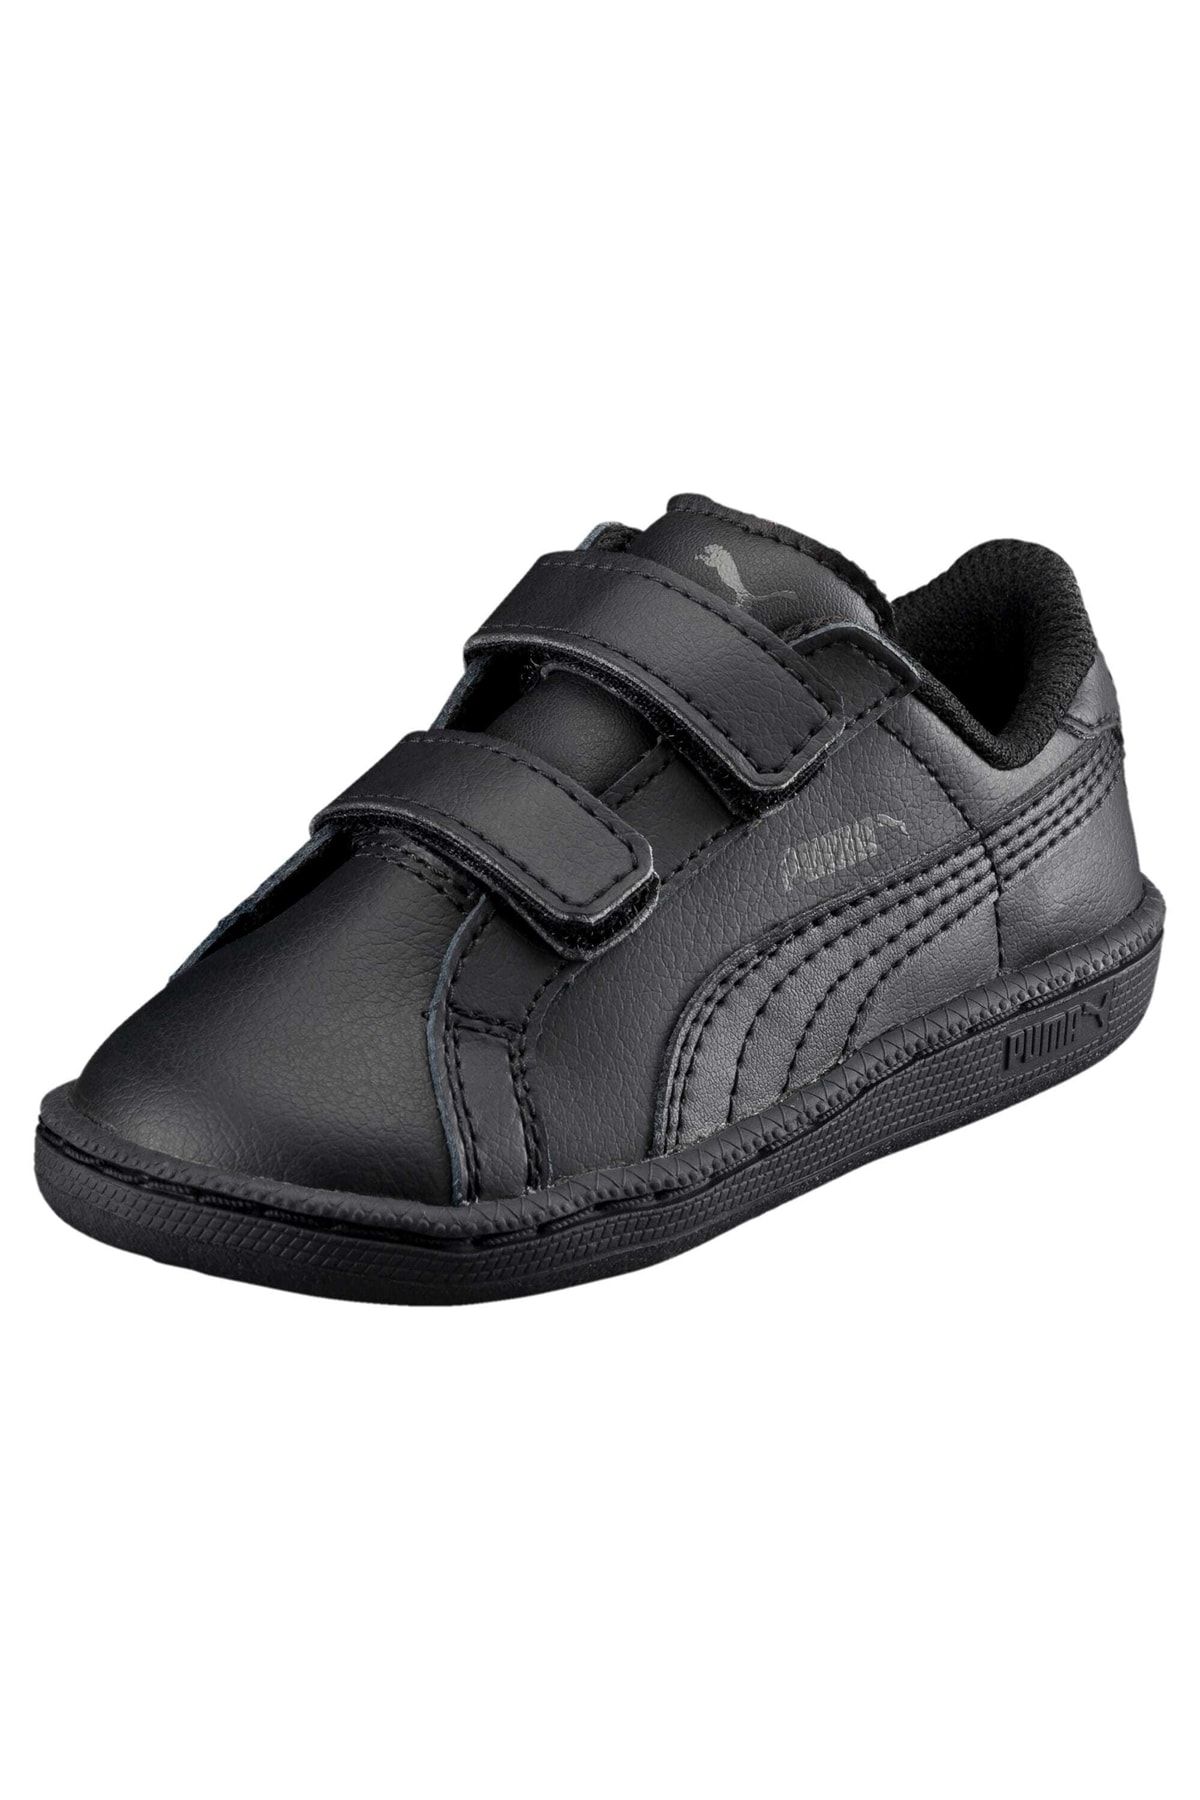 Puma Smash Leather V Kids Shoes - Trendyol